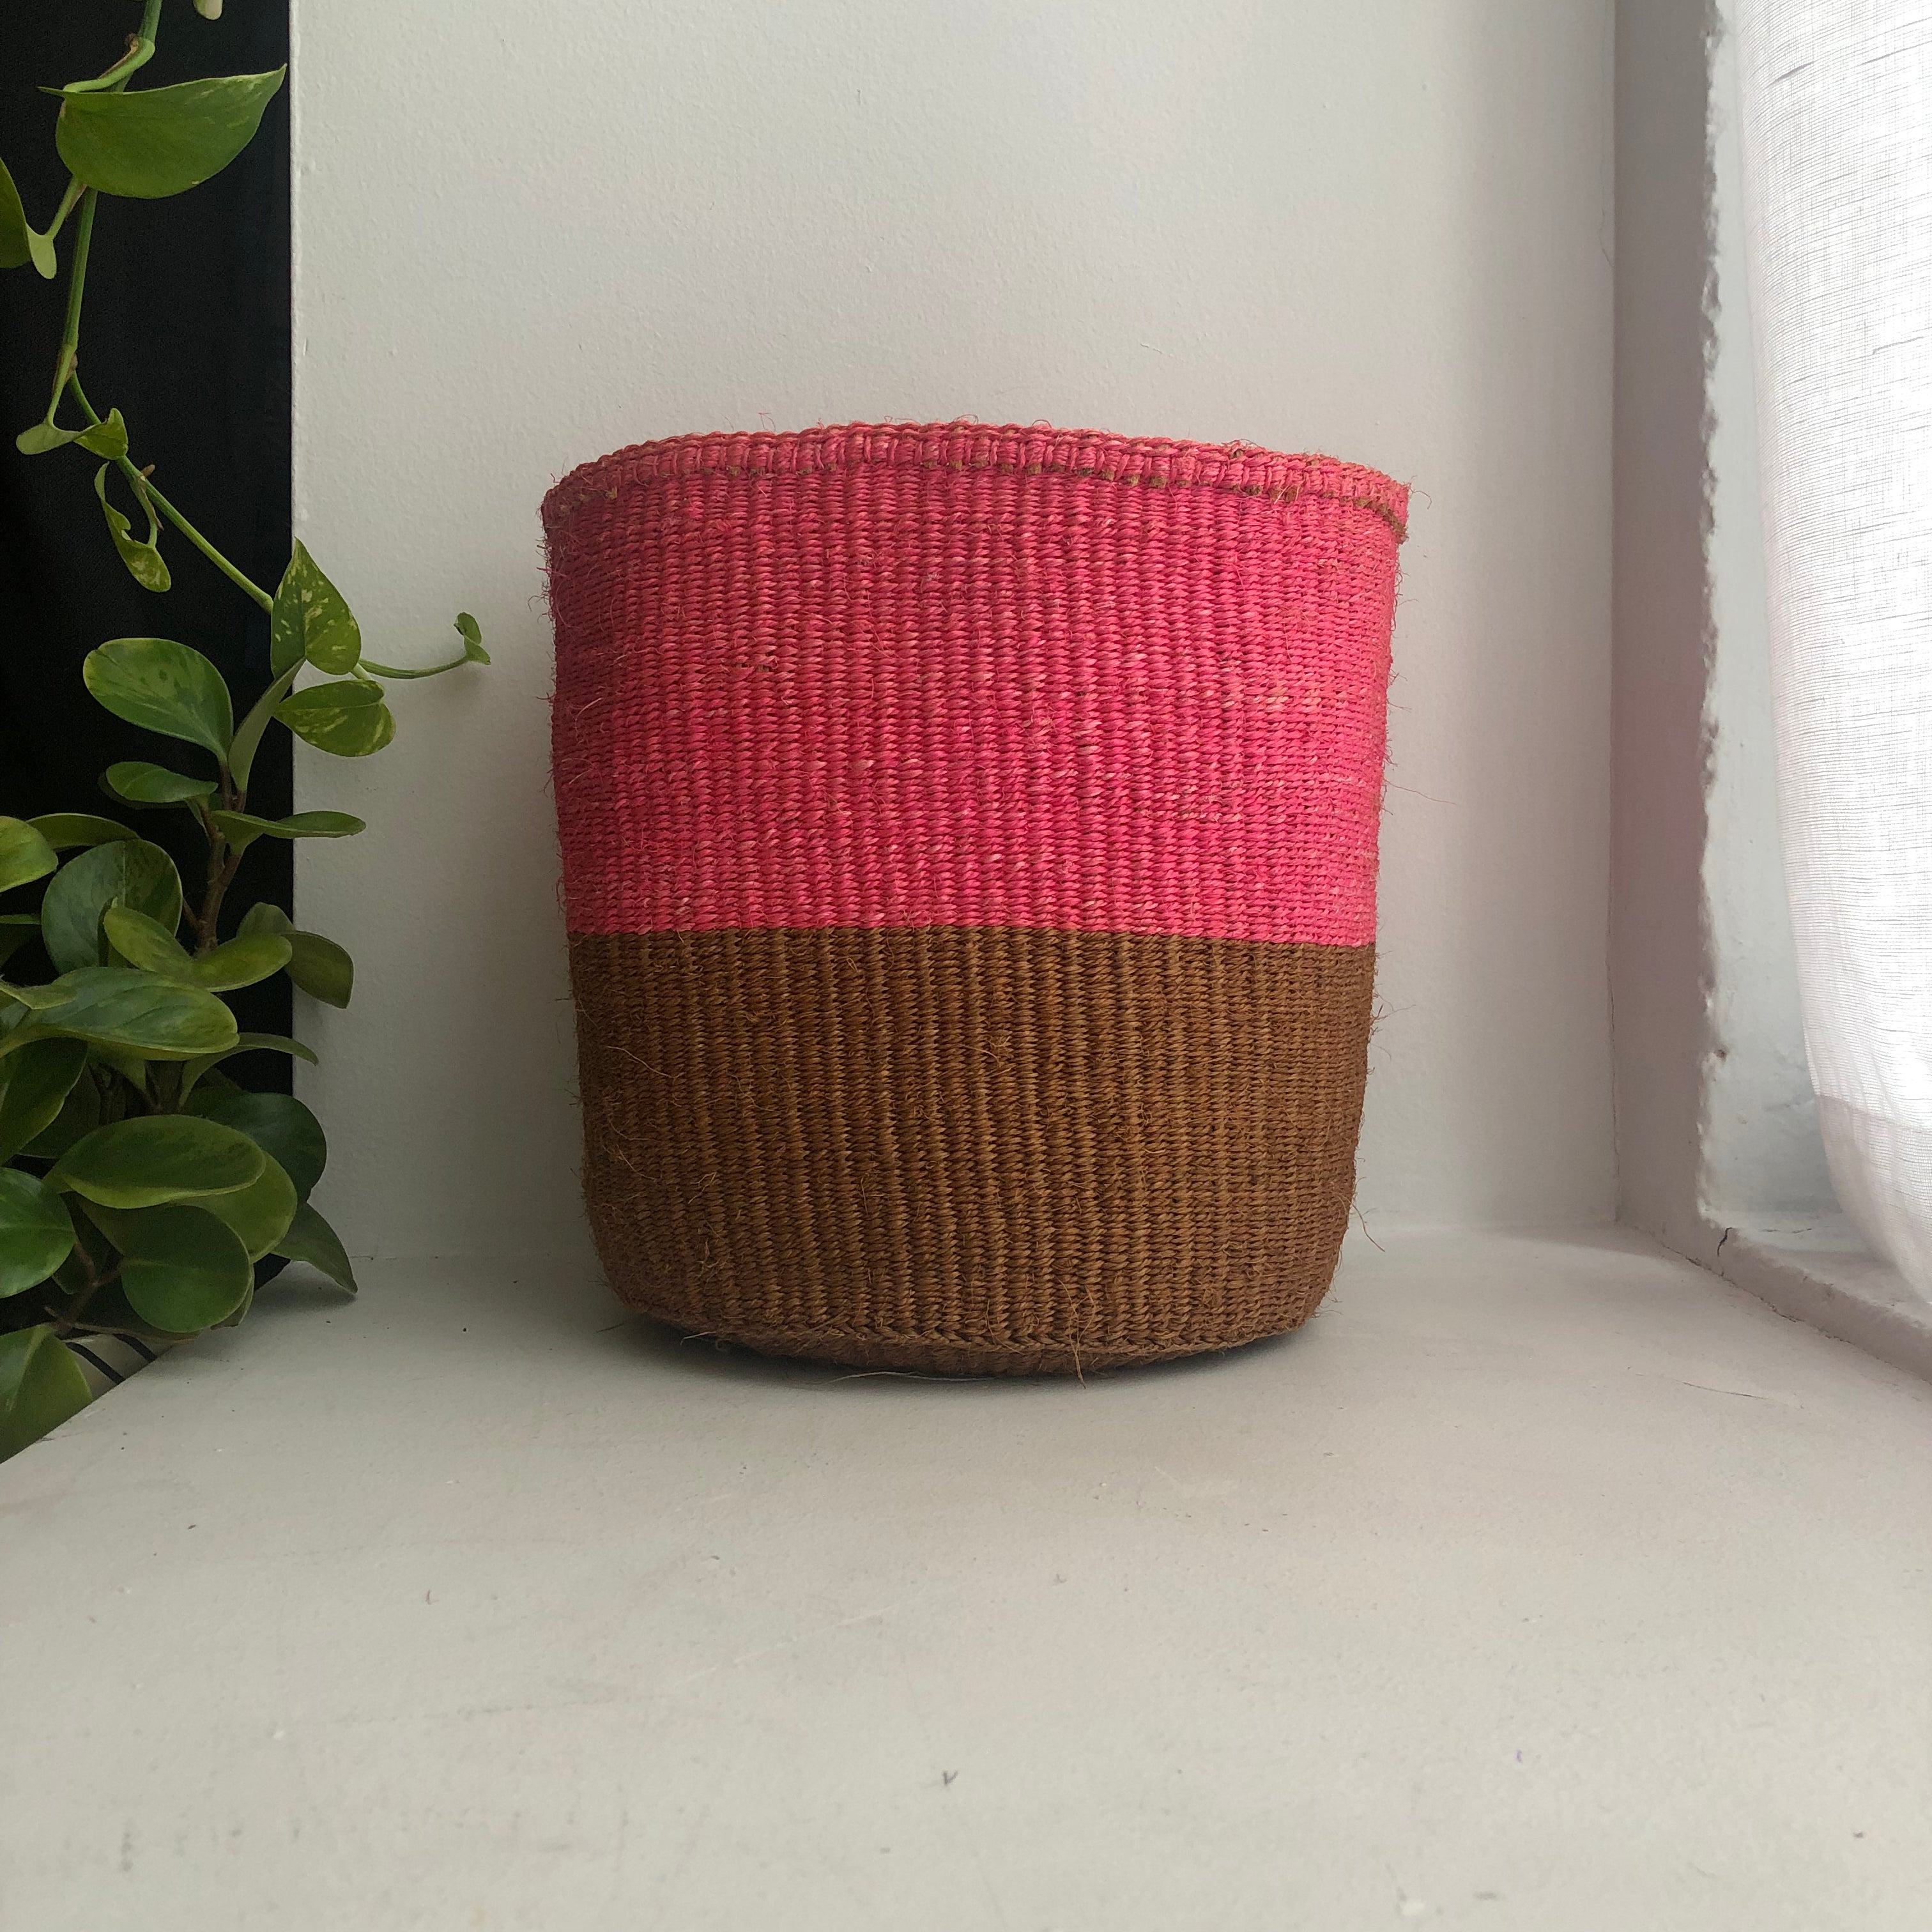 8" pink and natural basket